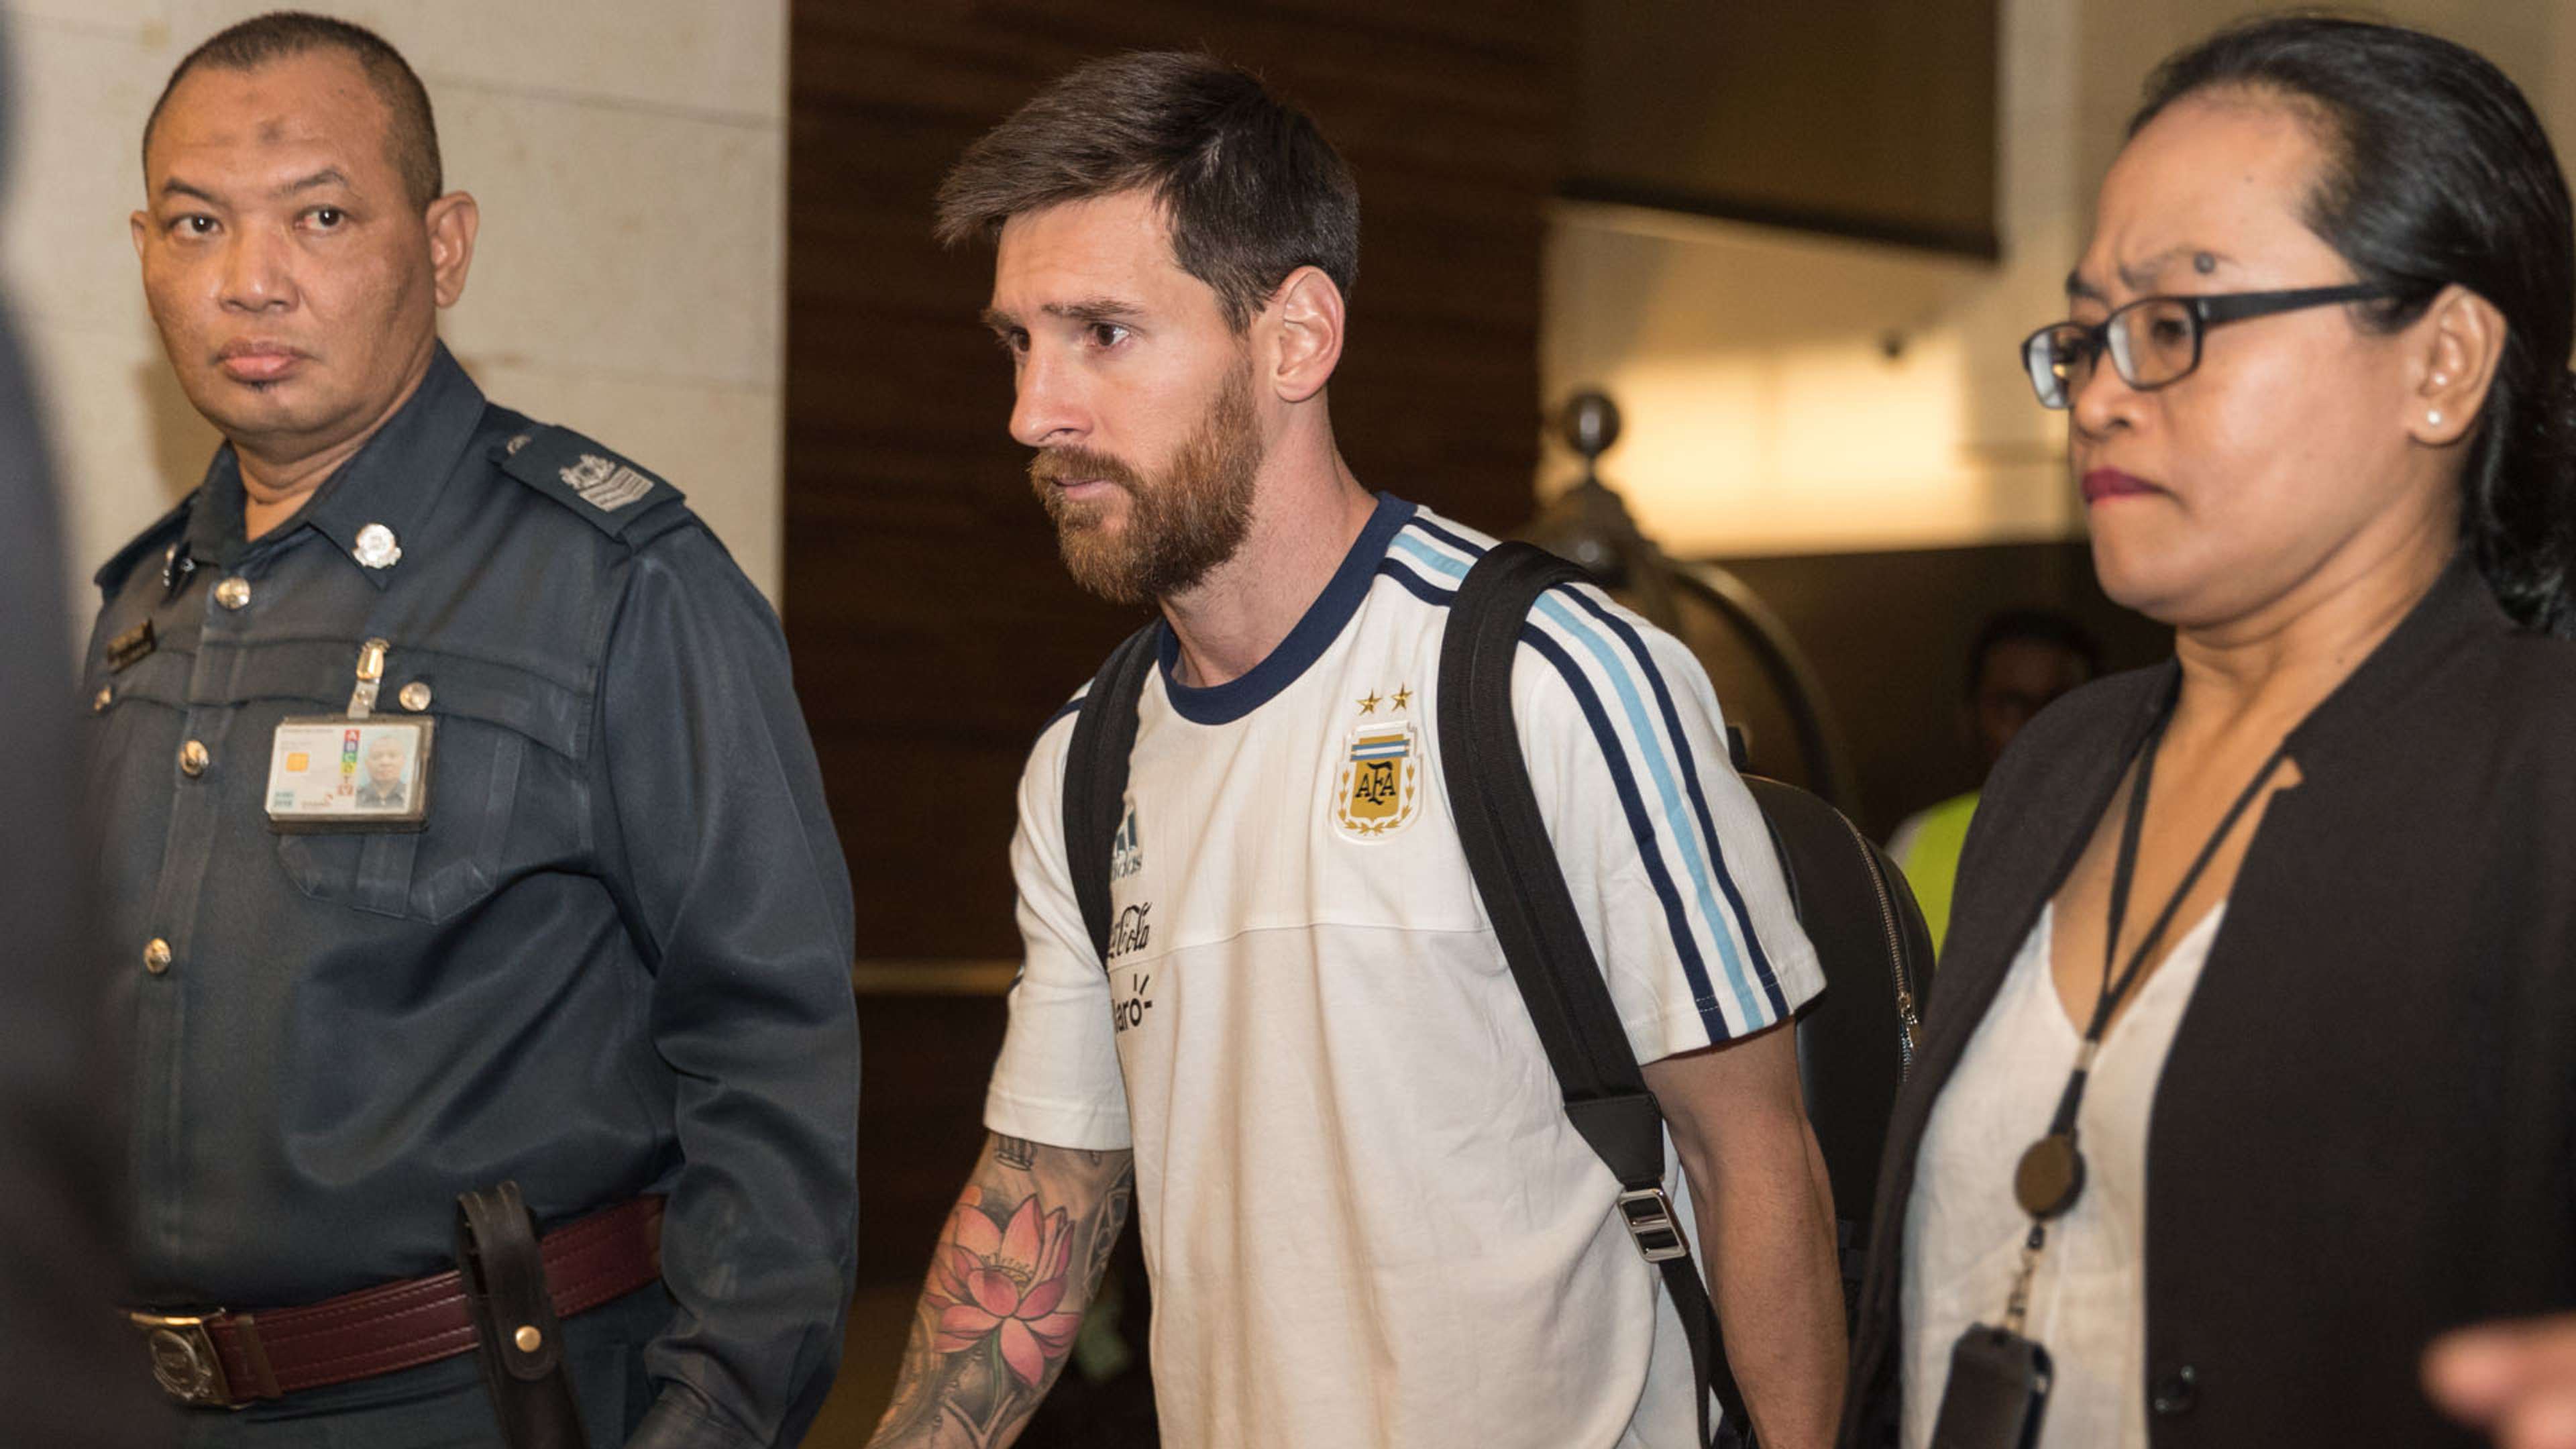 Lionel Messi Argentina Football Team in Singapore